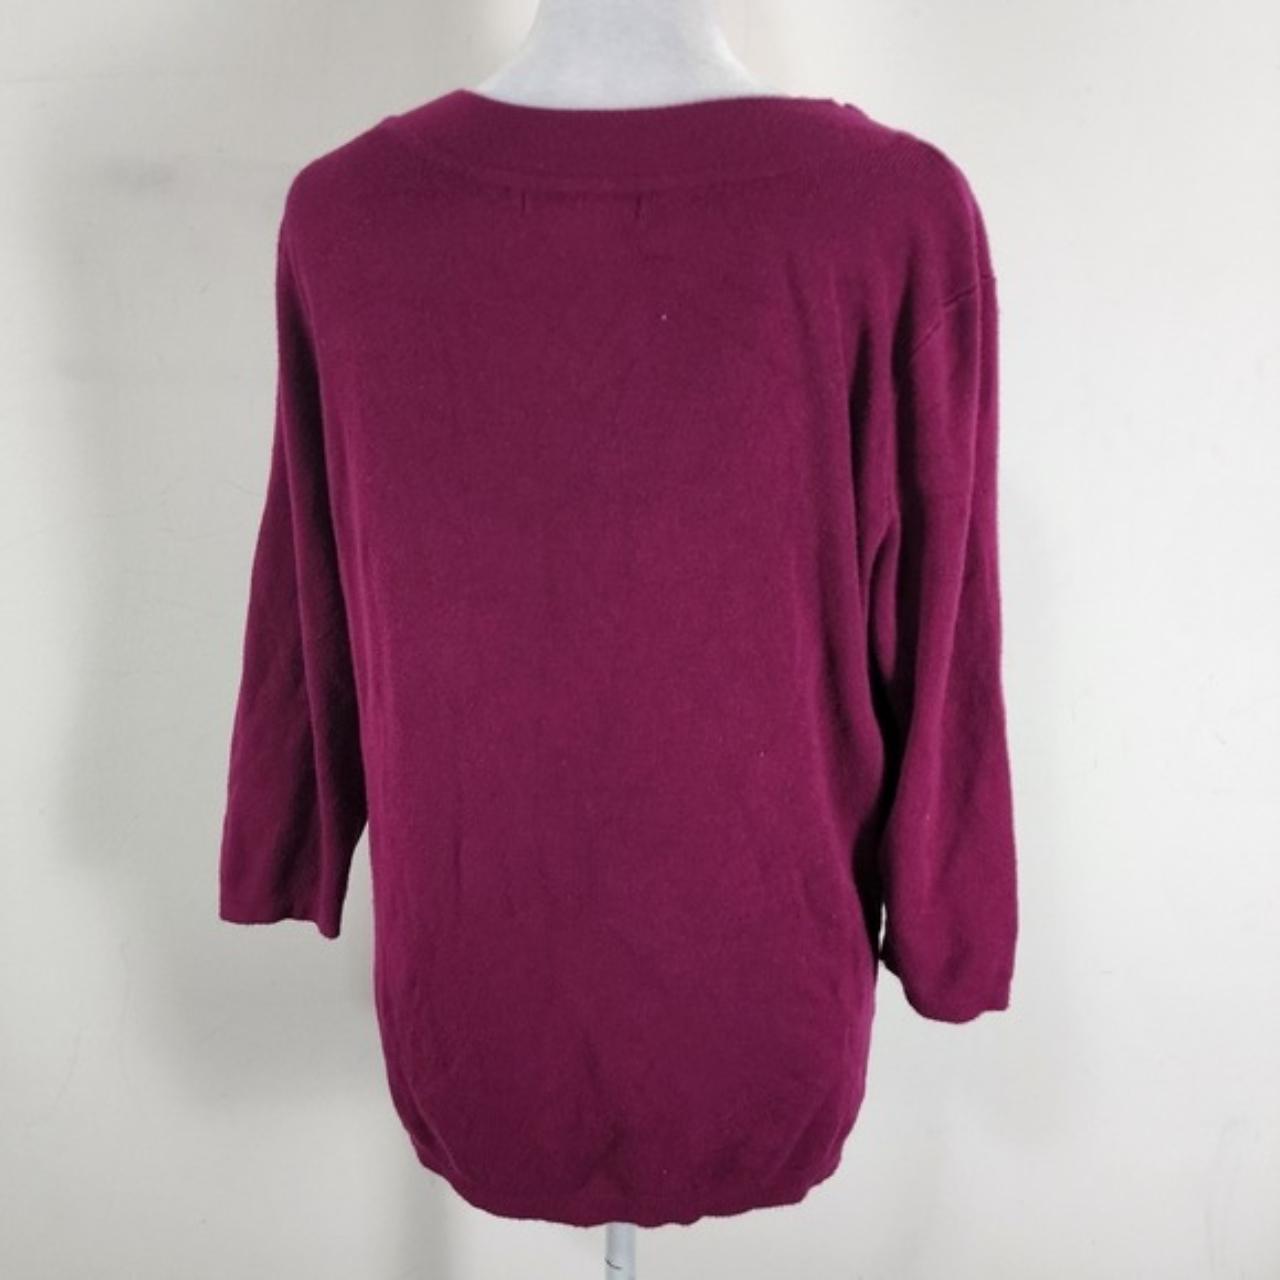 Roz & Ali womens sweater top Sz L 3/4 sleeve pink... - Depop